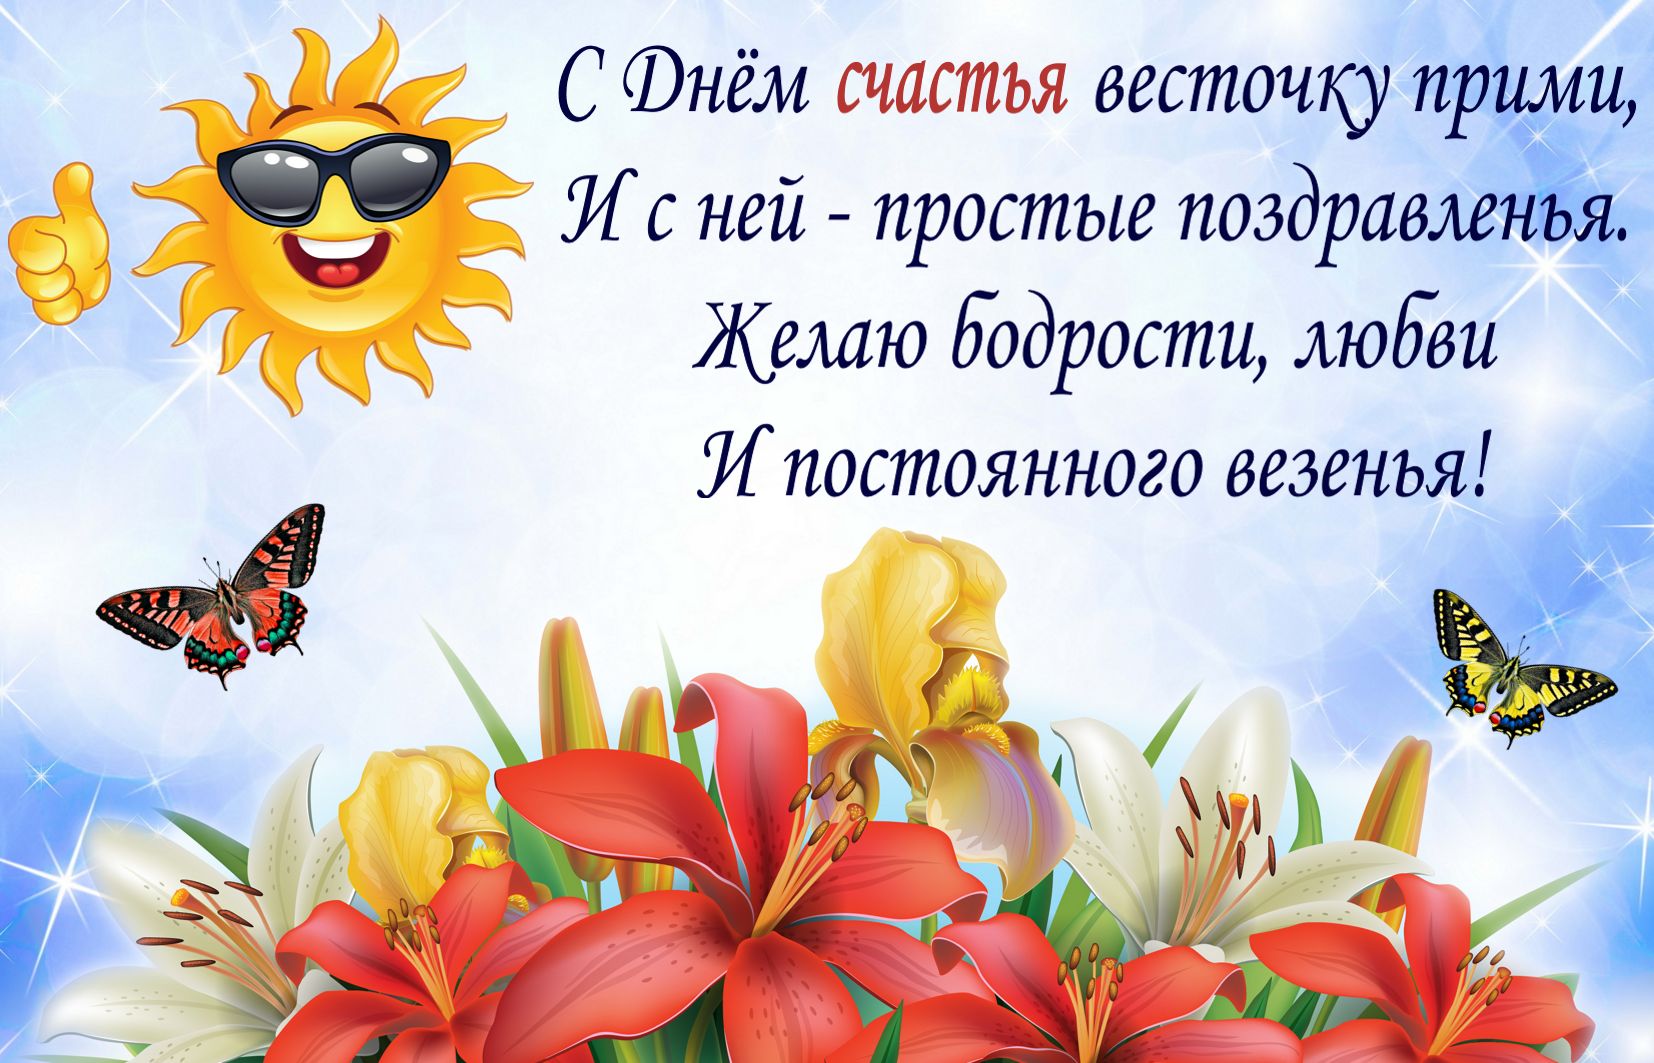 Международный день счастья , открытка с днём счастья , цветы. Открытка , картинка с днём счастья , международный  день счастья 20 марта , на открытке изображены красивые цветы , яркая открытка к празднику ко дню счастья . 